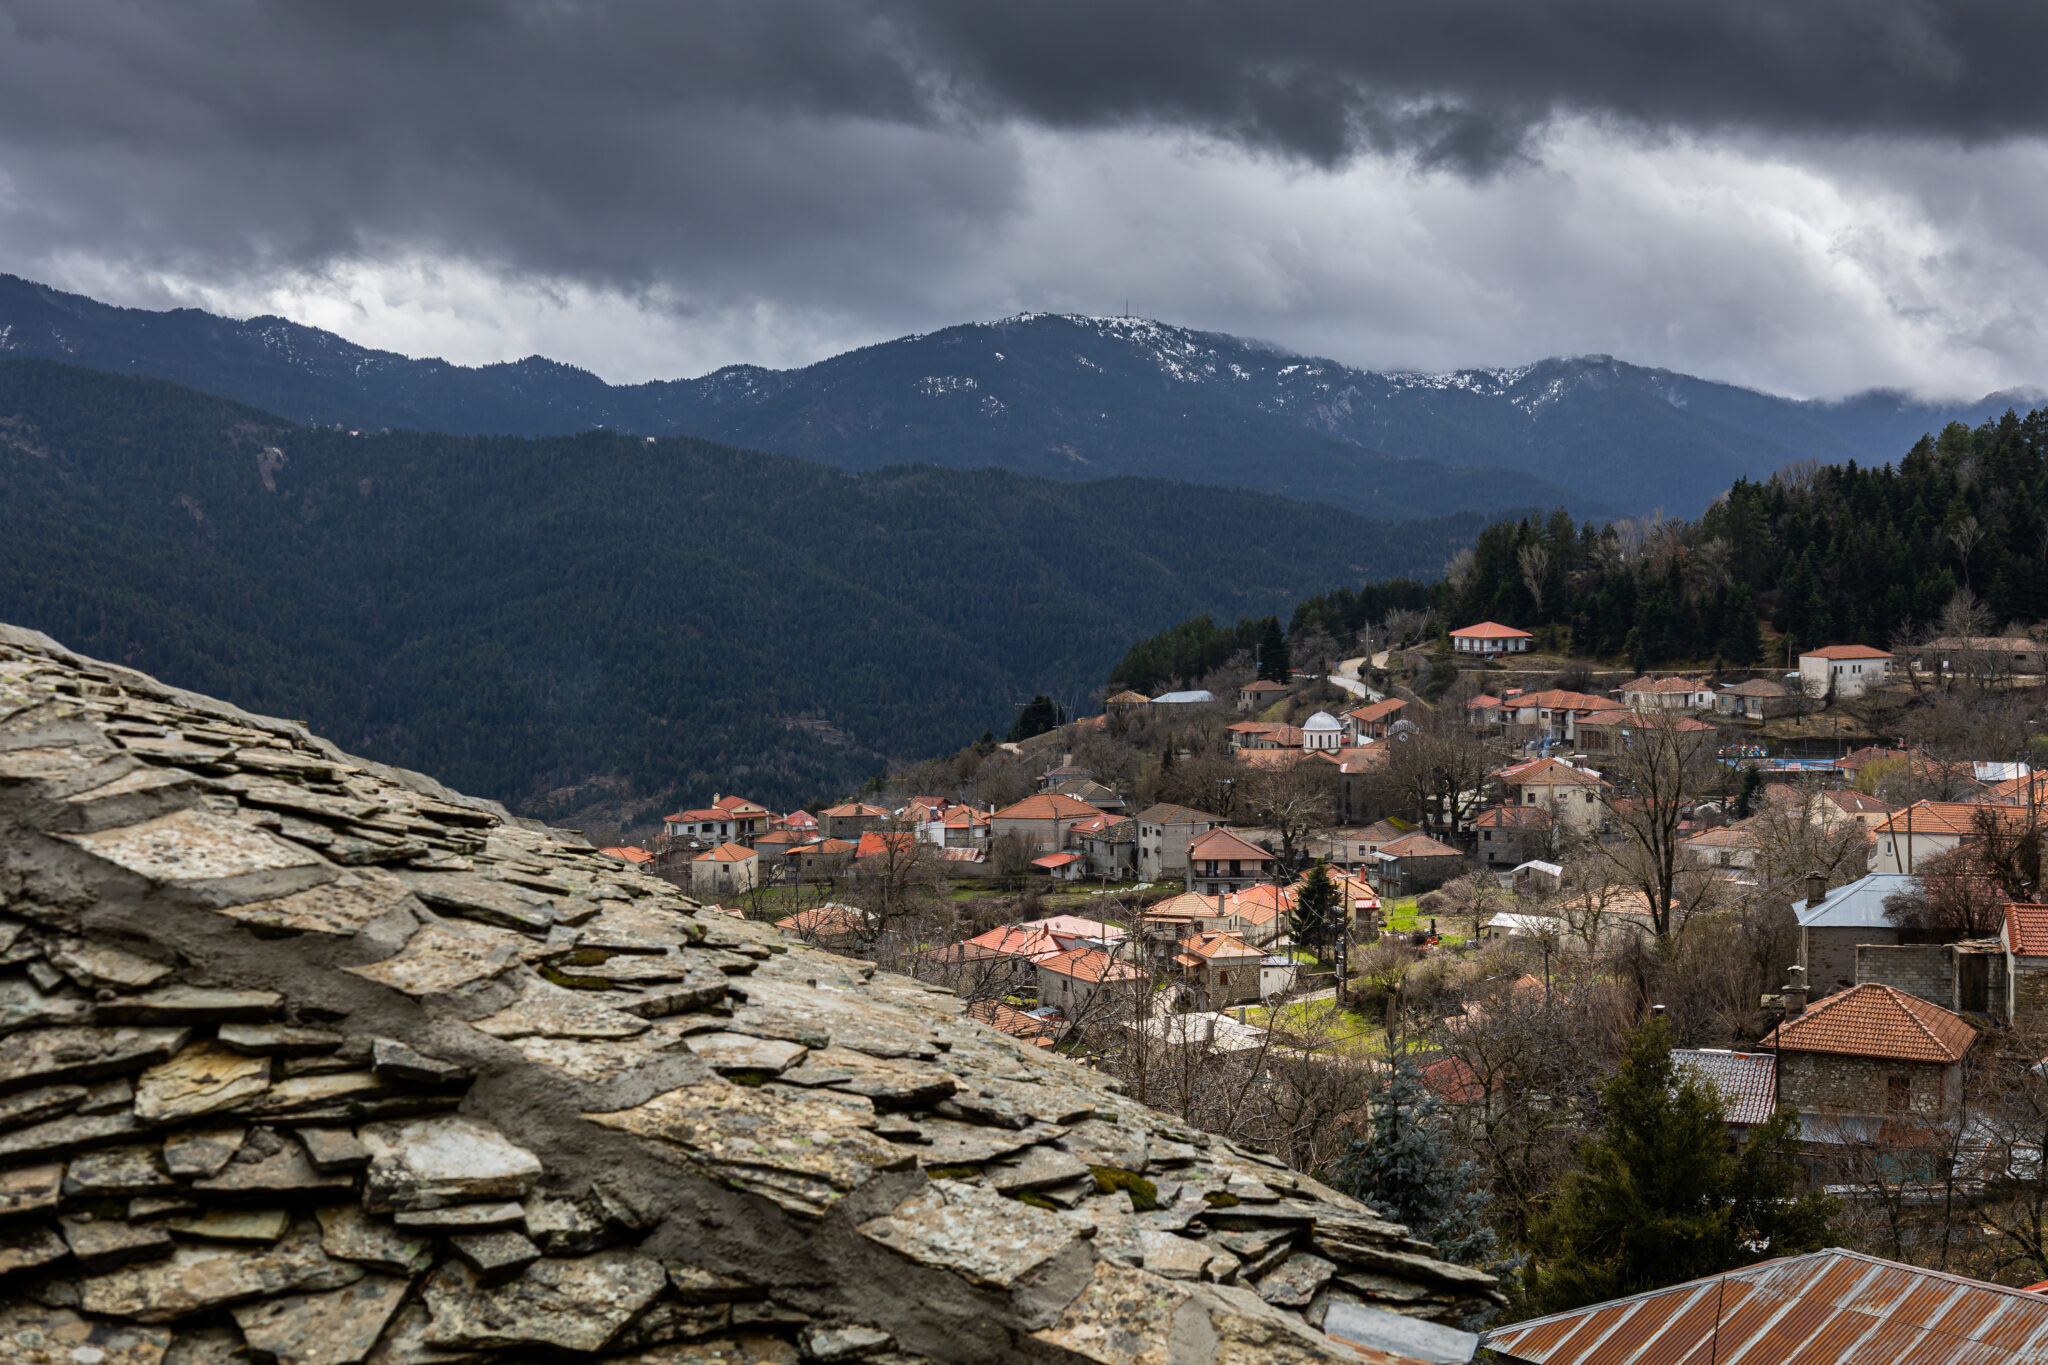 Γραμμένη Οξυά: Το χωριό με τις πέτρινες βρύσες, που μοιάζει να αναδύεται από το δάσος της Ορεινής Ναυπακτίας